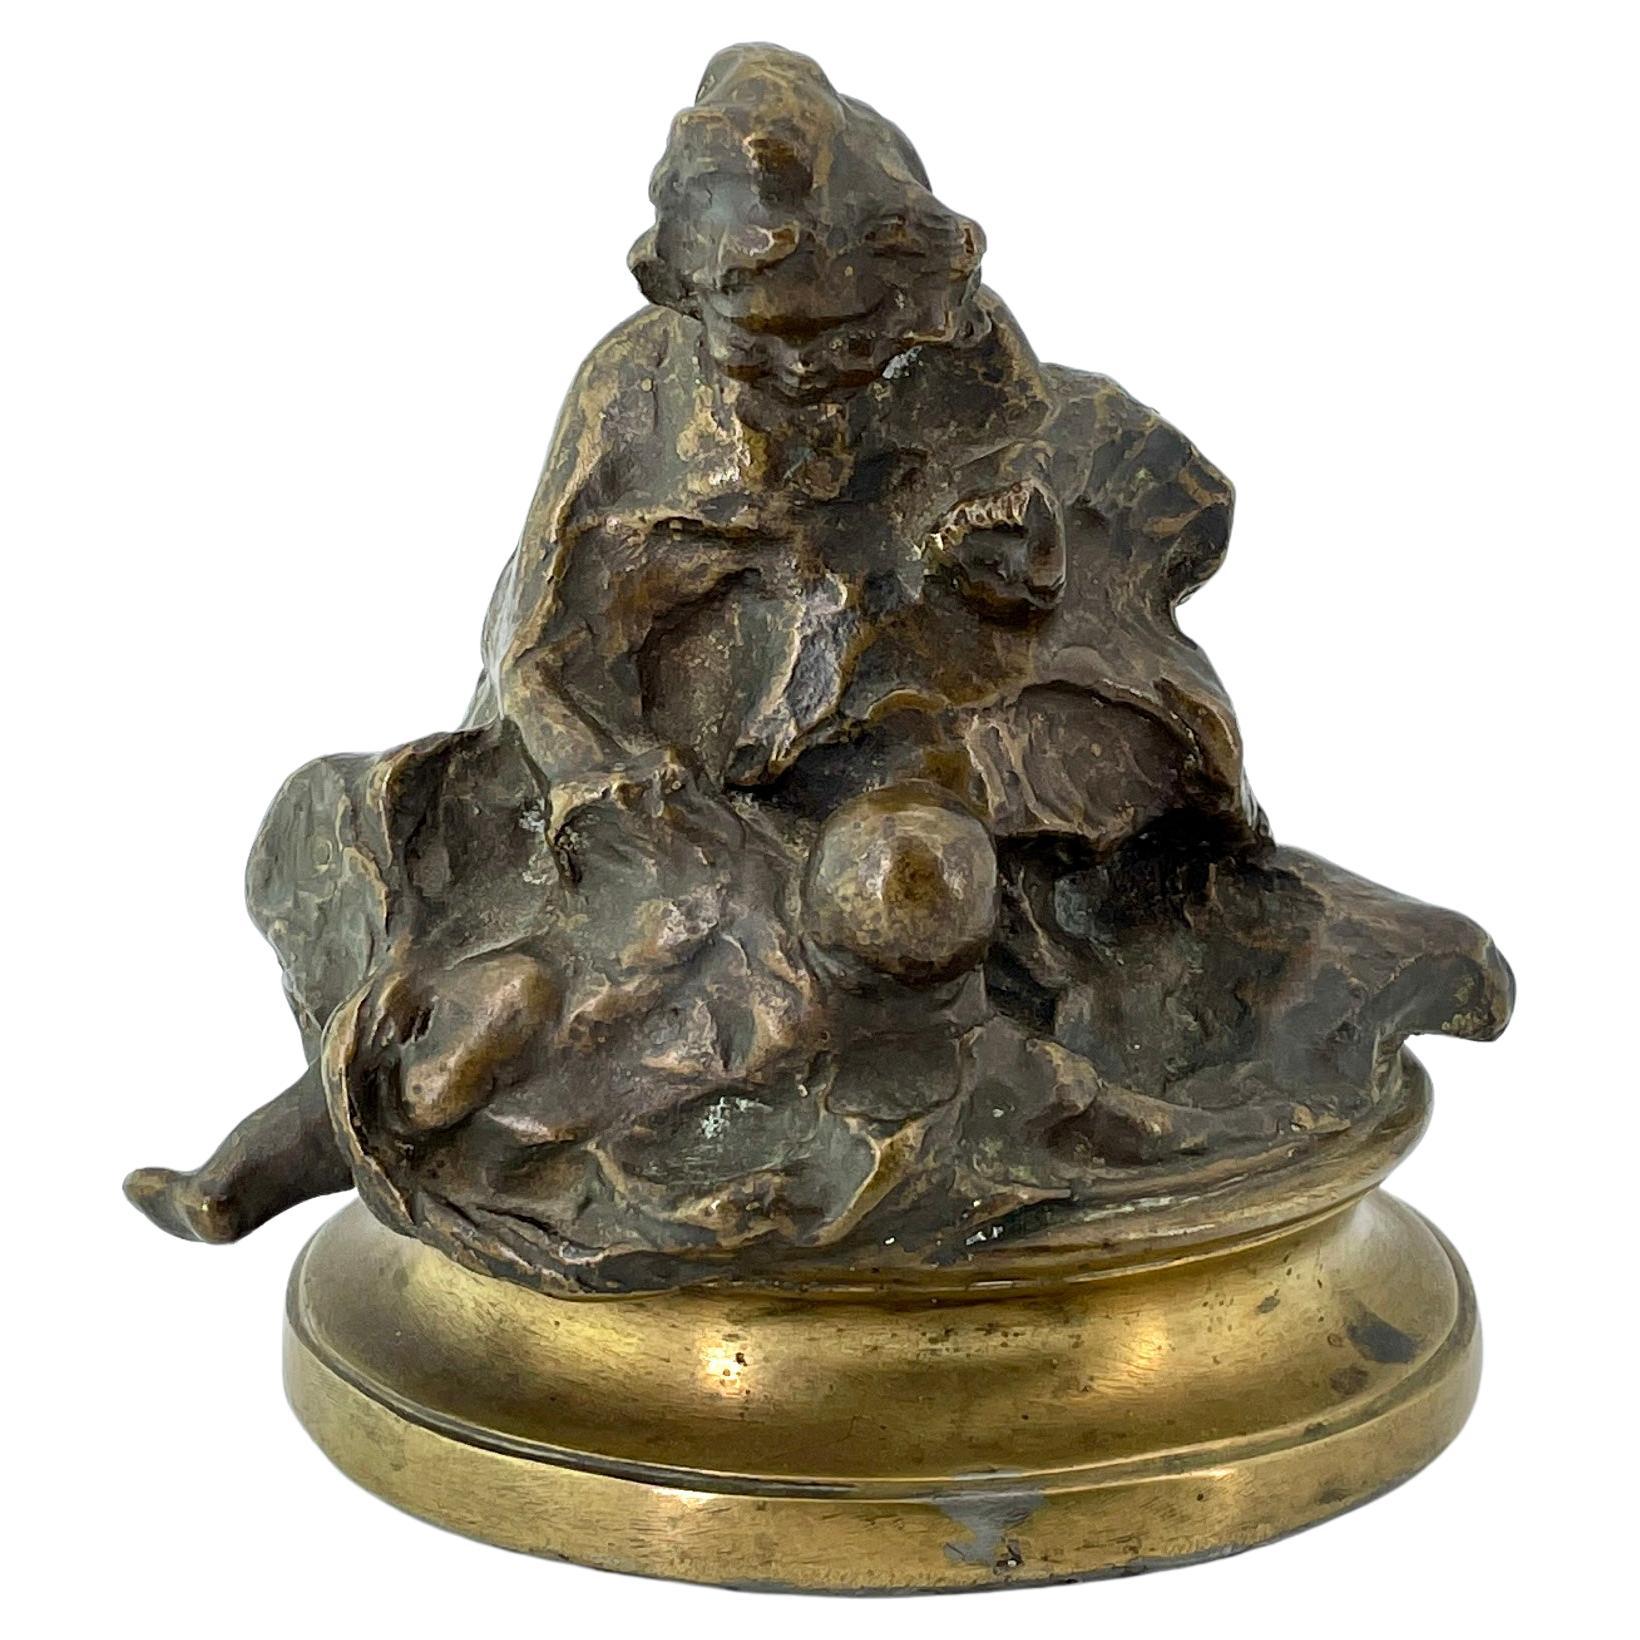 Ancienne sculpture de plateau de table en bronze d'un artiste illisible de ChiId signée comme Rodin